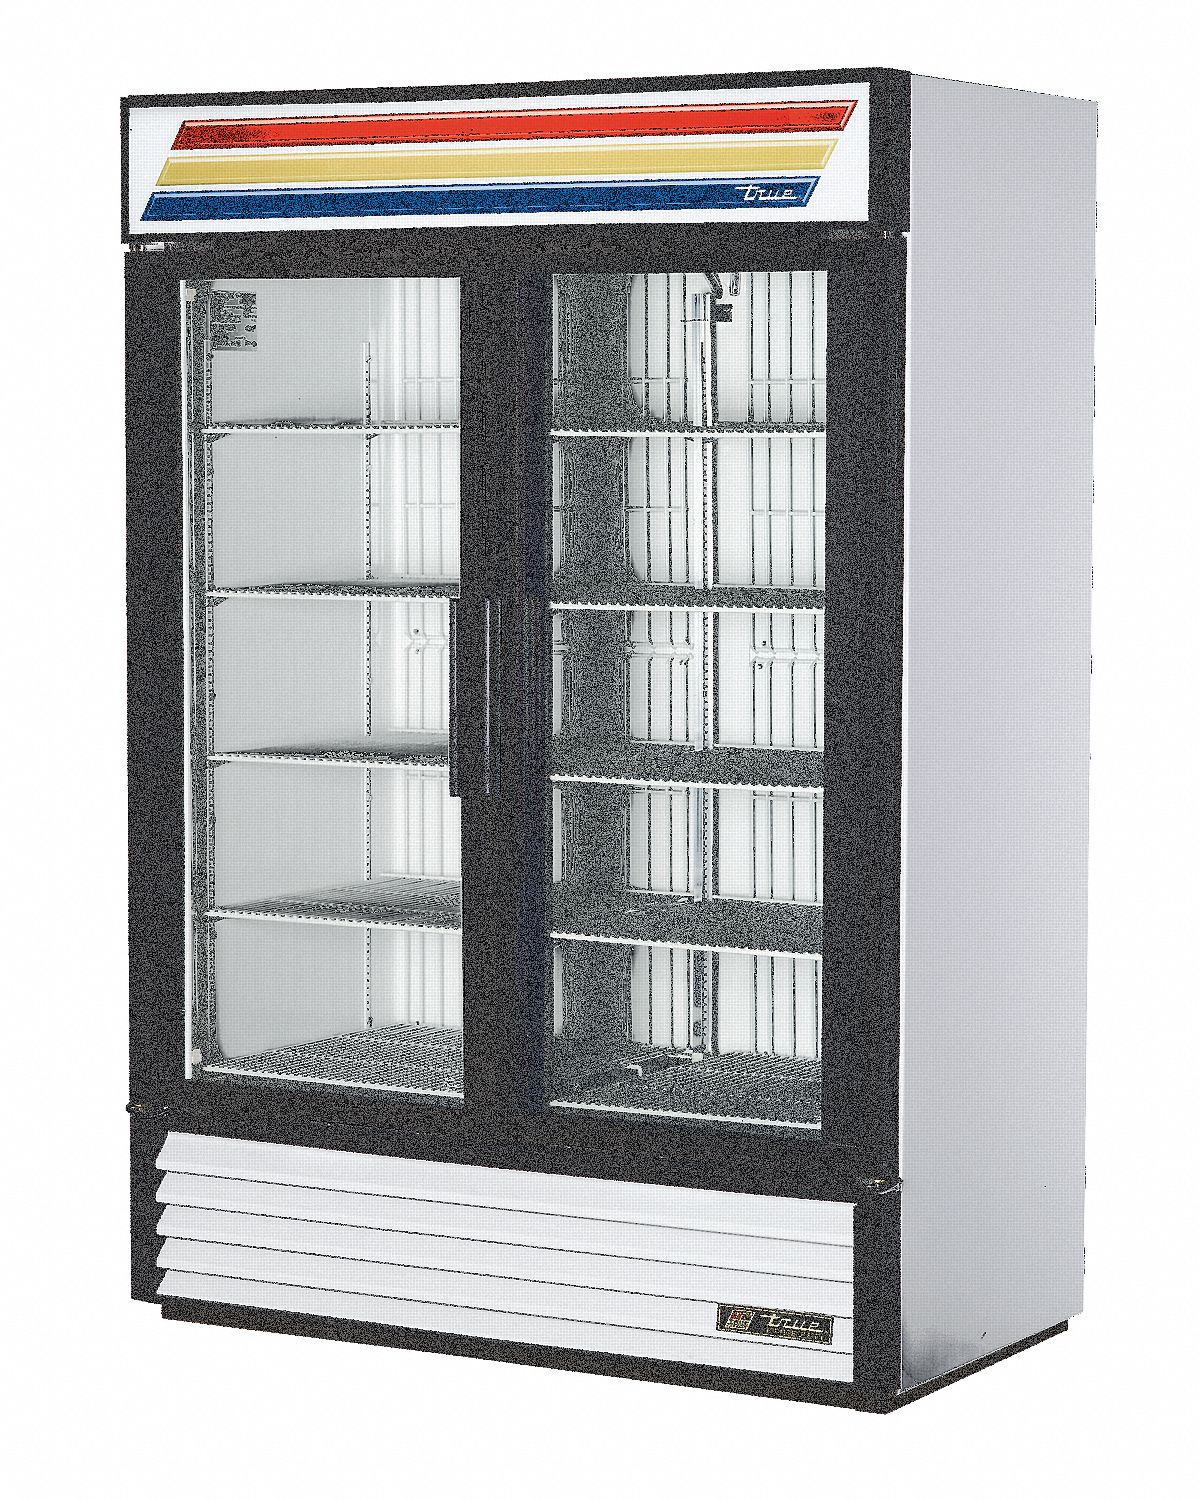 6PPK8 - Freezer Double Glass Door 49 cu Ft.